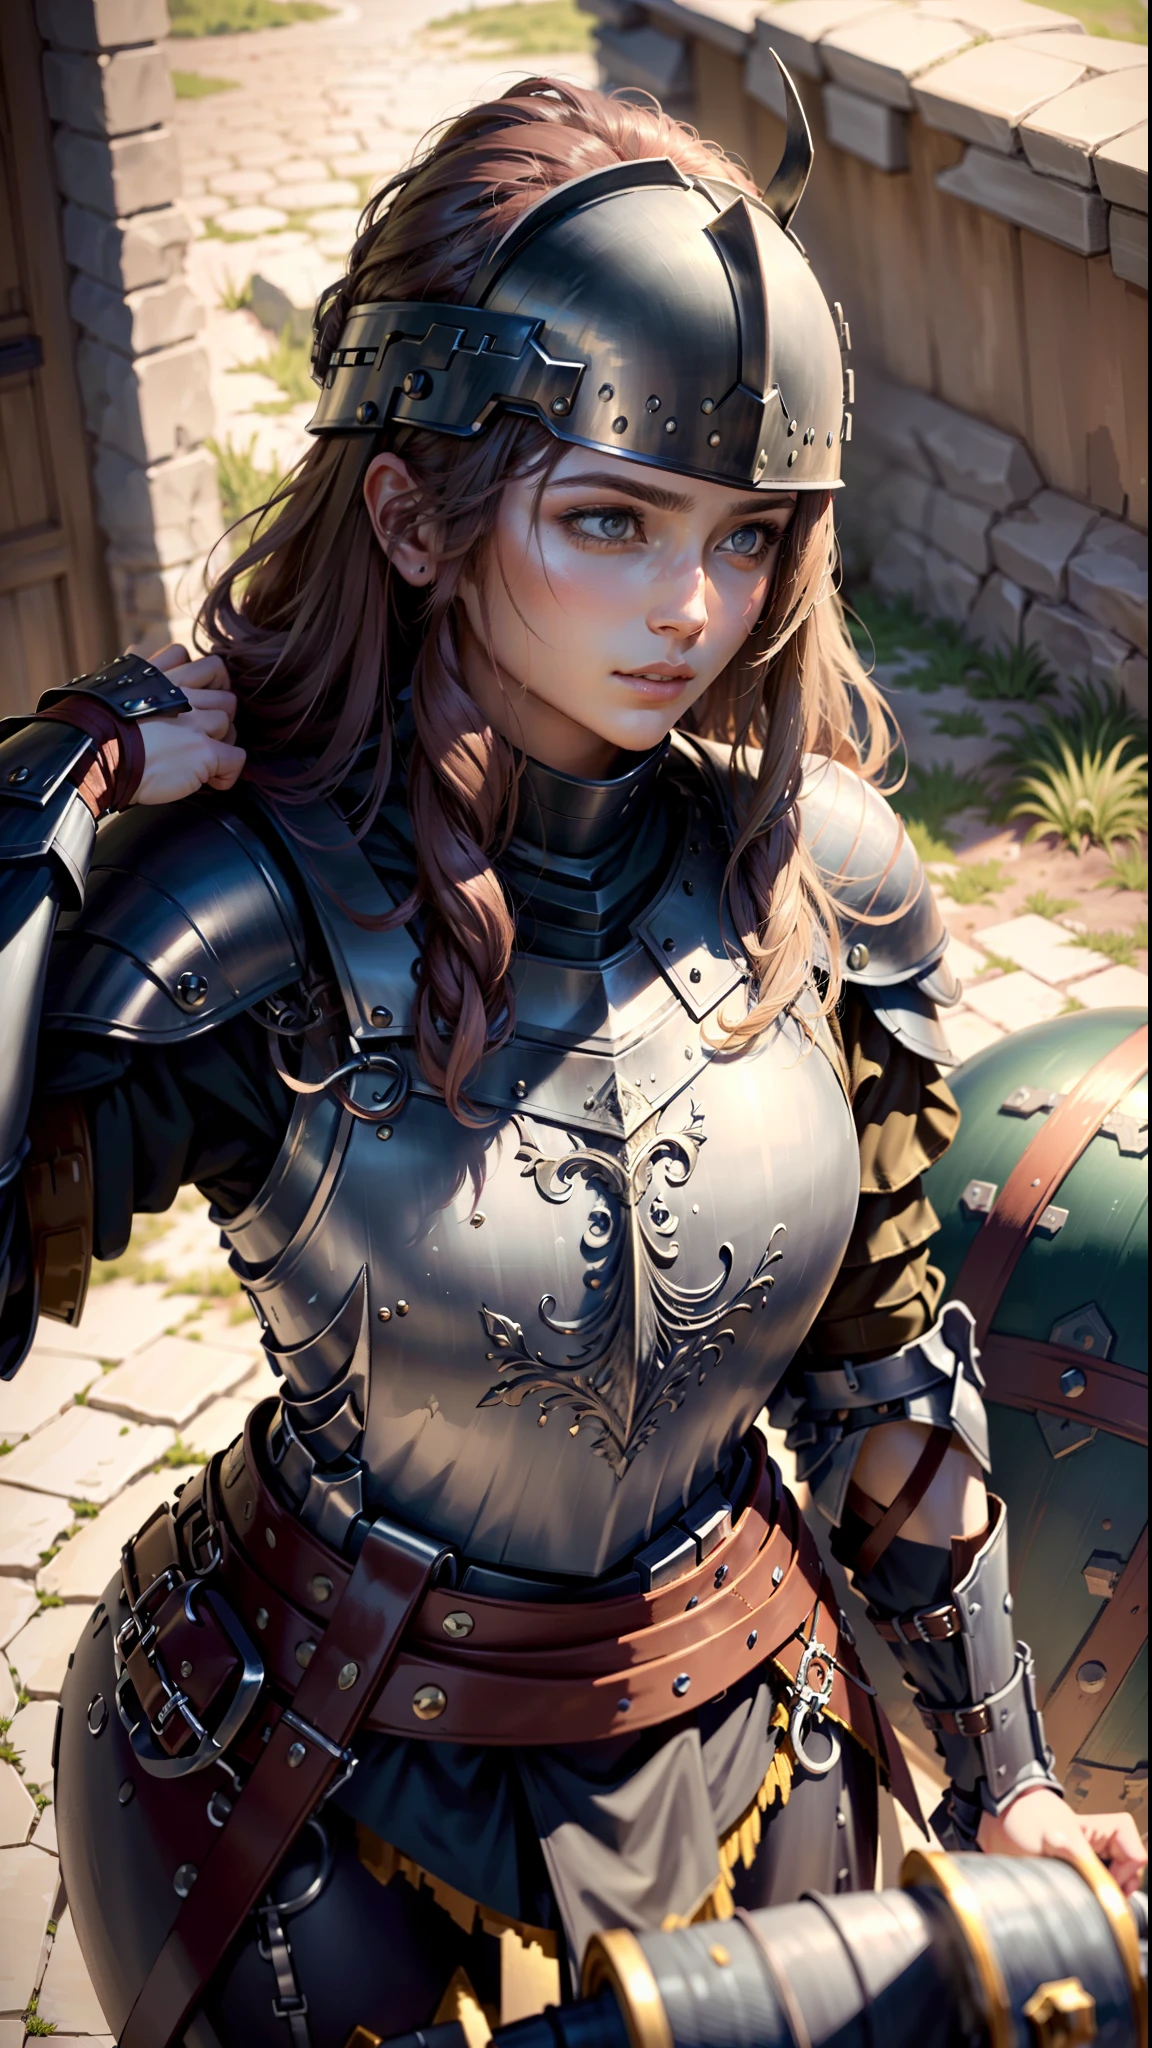 ((melhor qualidade)), ((obra de arte)), (Altamente detalhado:1.3),uma mulher vestindo armadura preta, cabelo longo. segurando um capacete, cena de guerra danificada por armadura